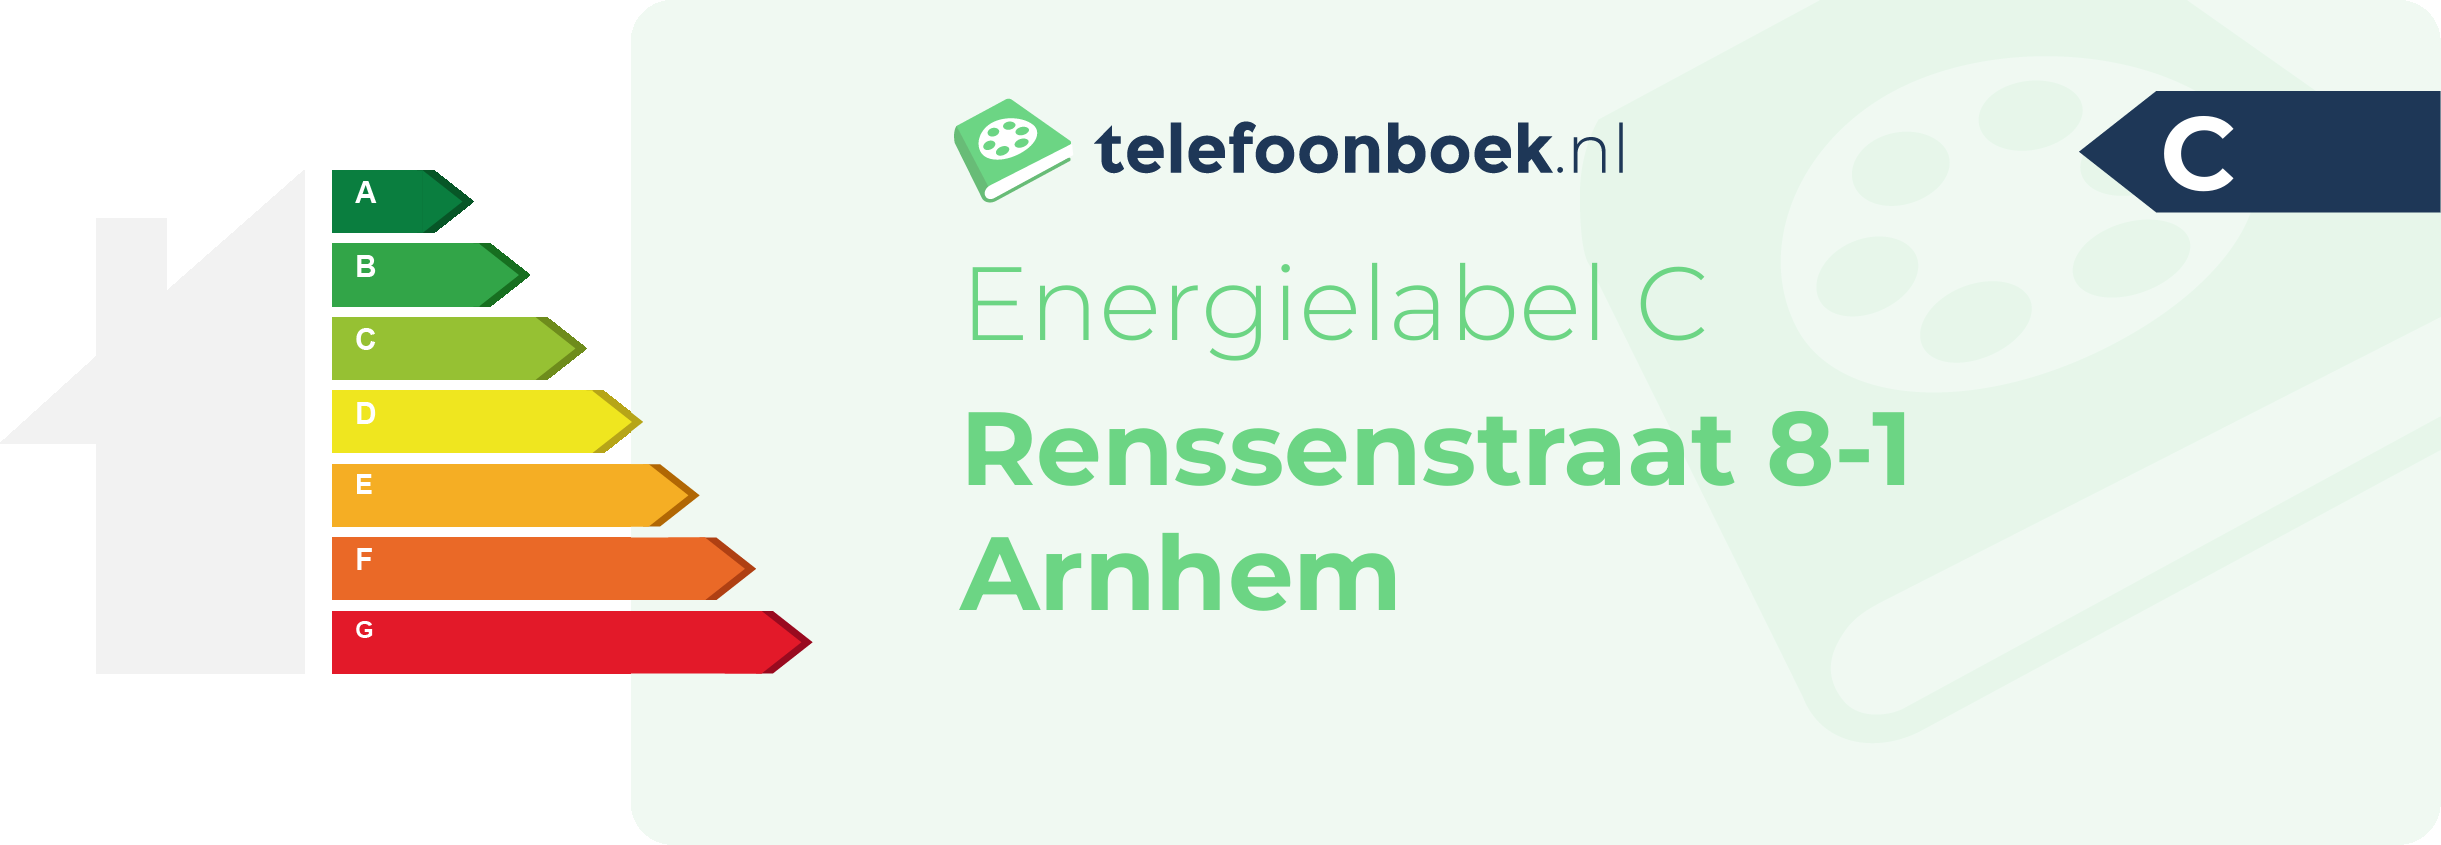 Energielabel Renssenstraat 8-1 Arnhem